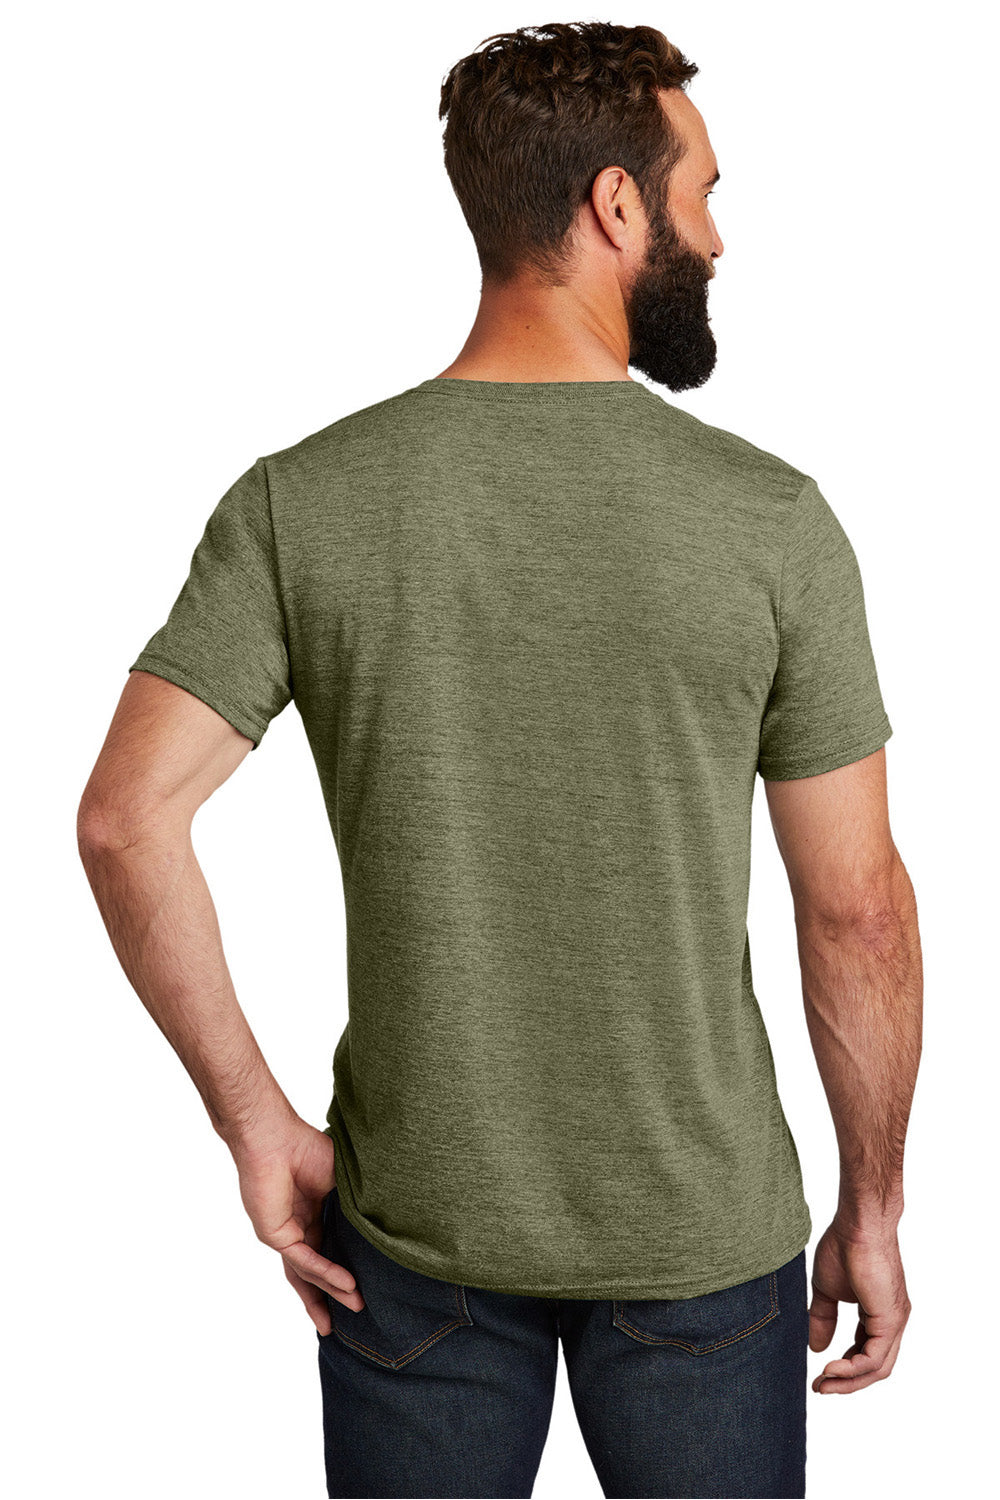 Allmade AL2014 Mens Short Sleeve V-Neck T-Shirt Olive You Green Model Back